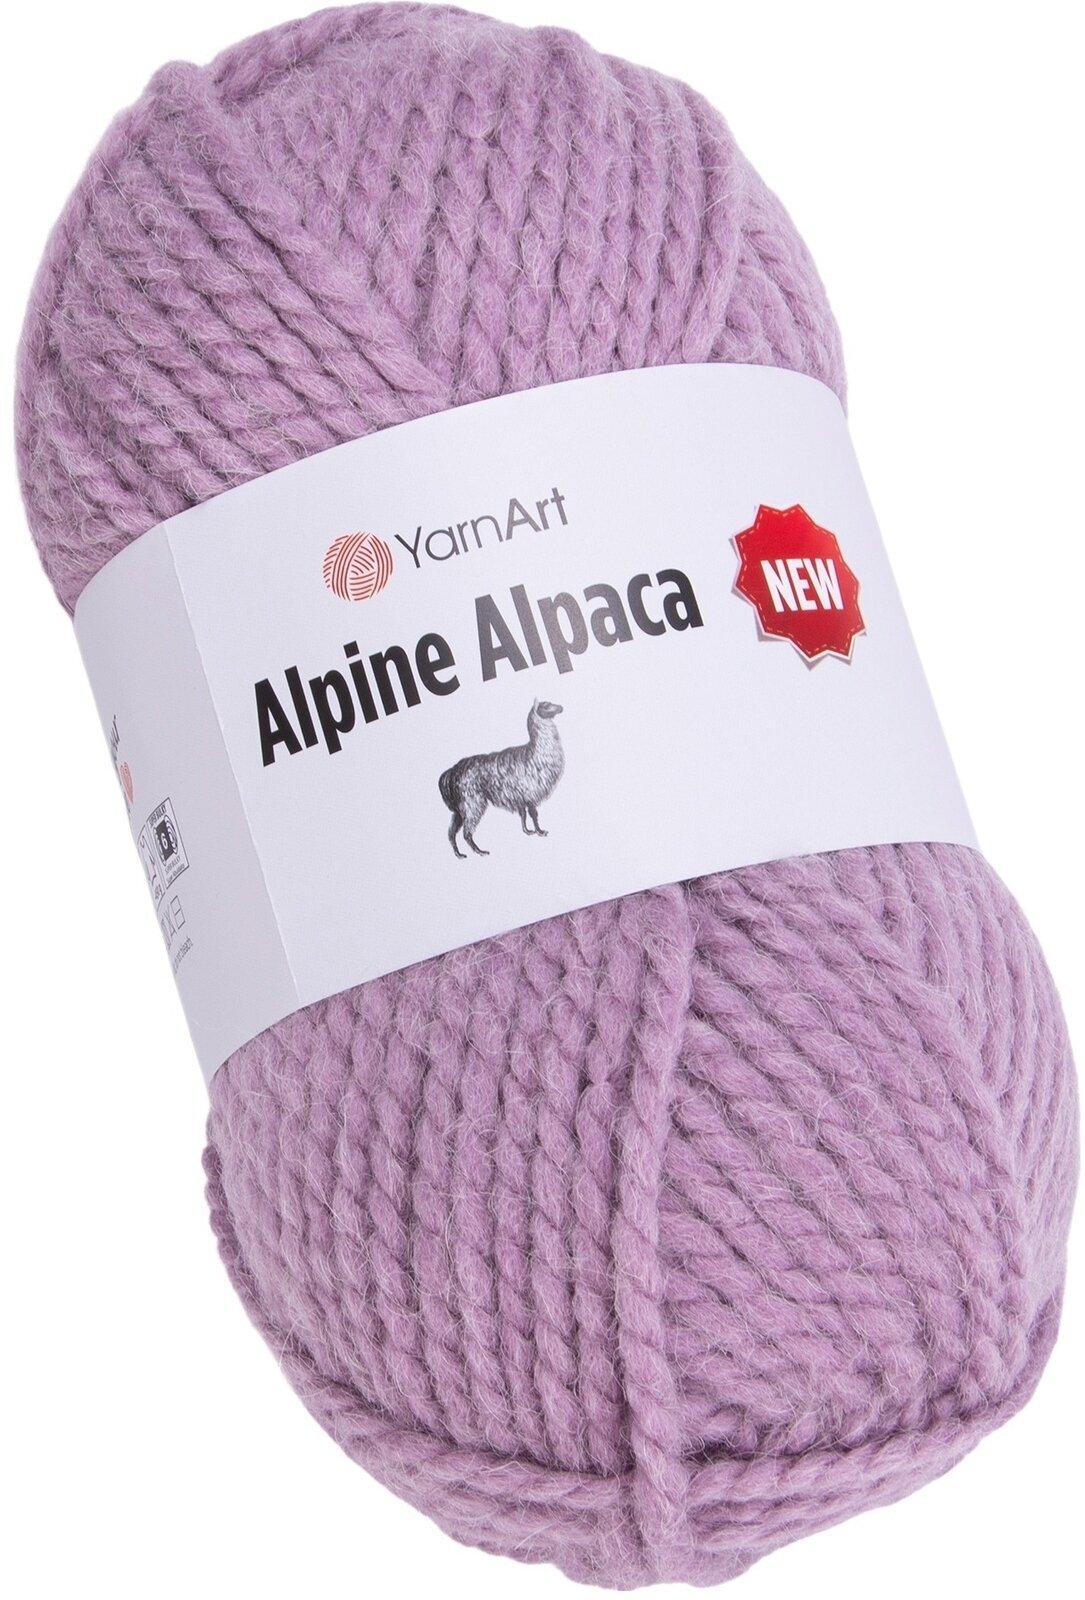 Fire de tricotat Yarn Art Alpine Alpaca 1443